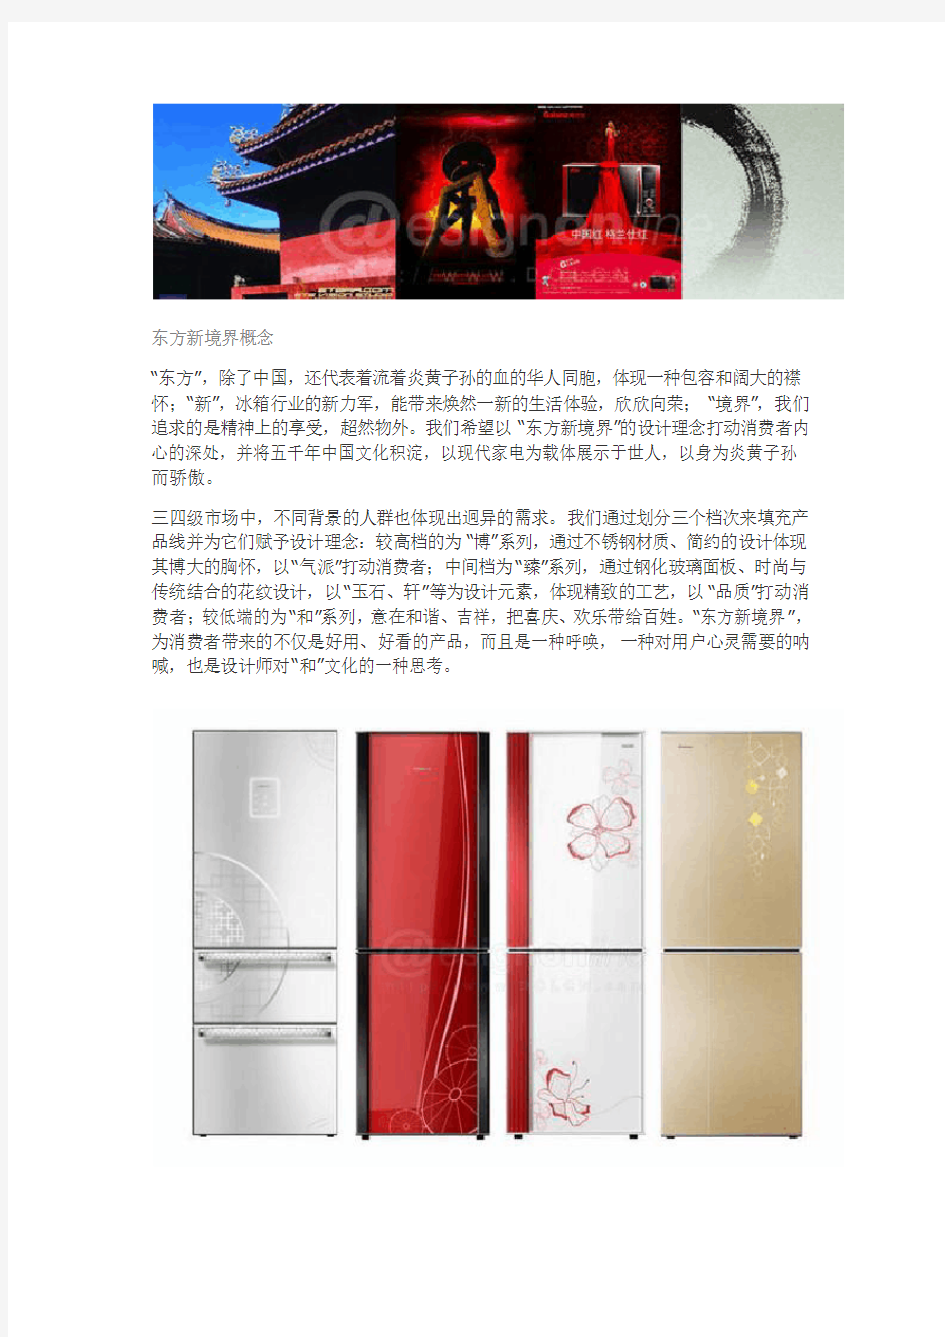 工业设计在“中国文化”方面的思考——冰箱系列化设计